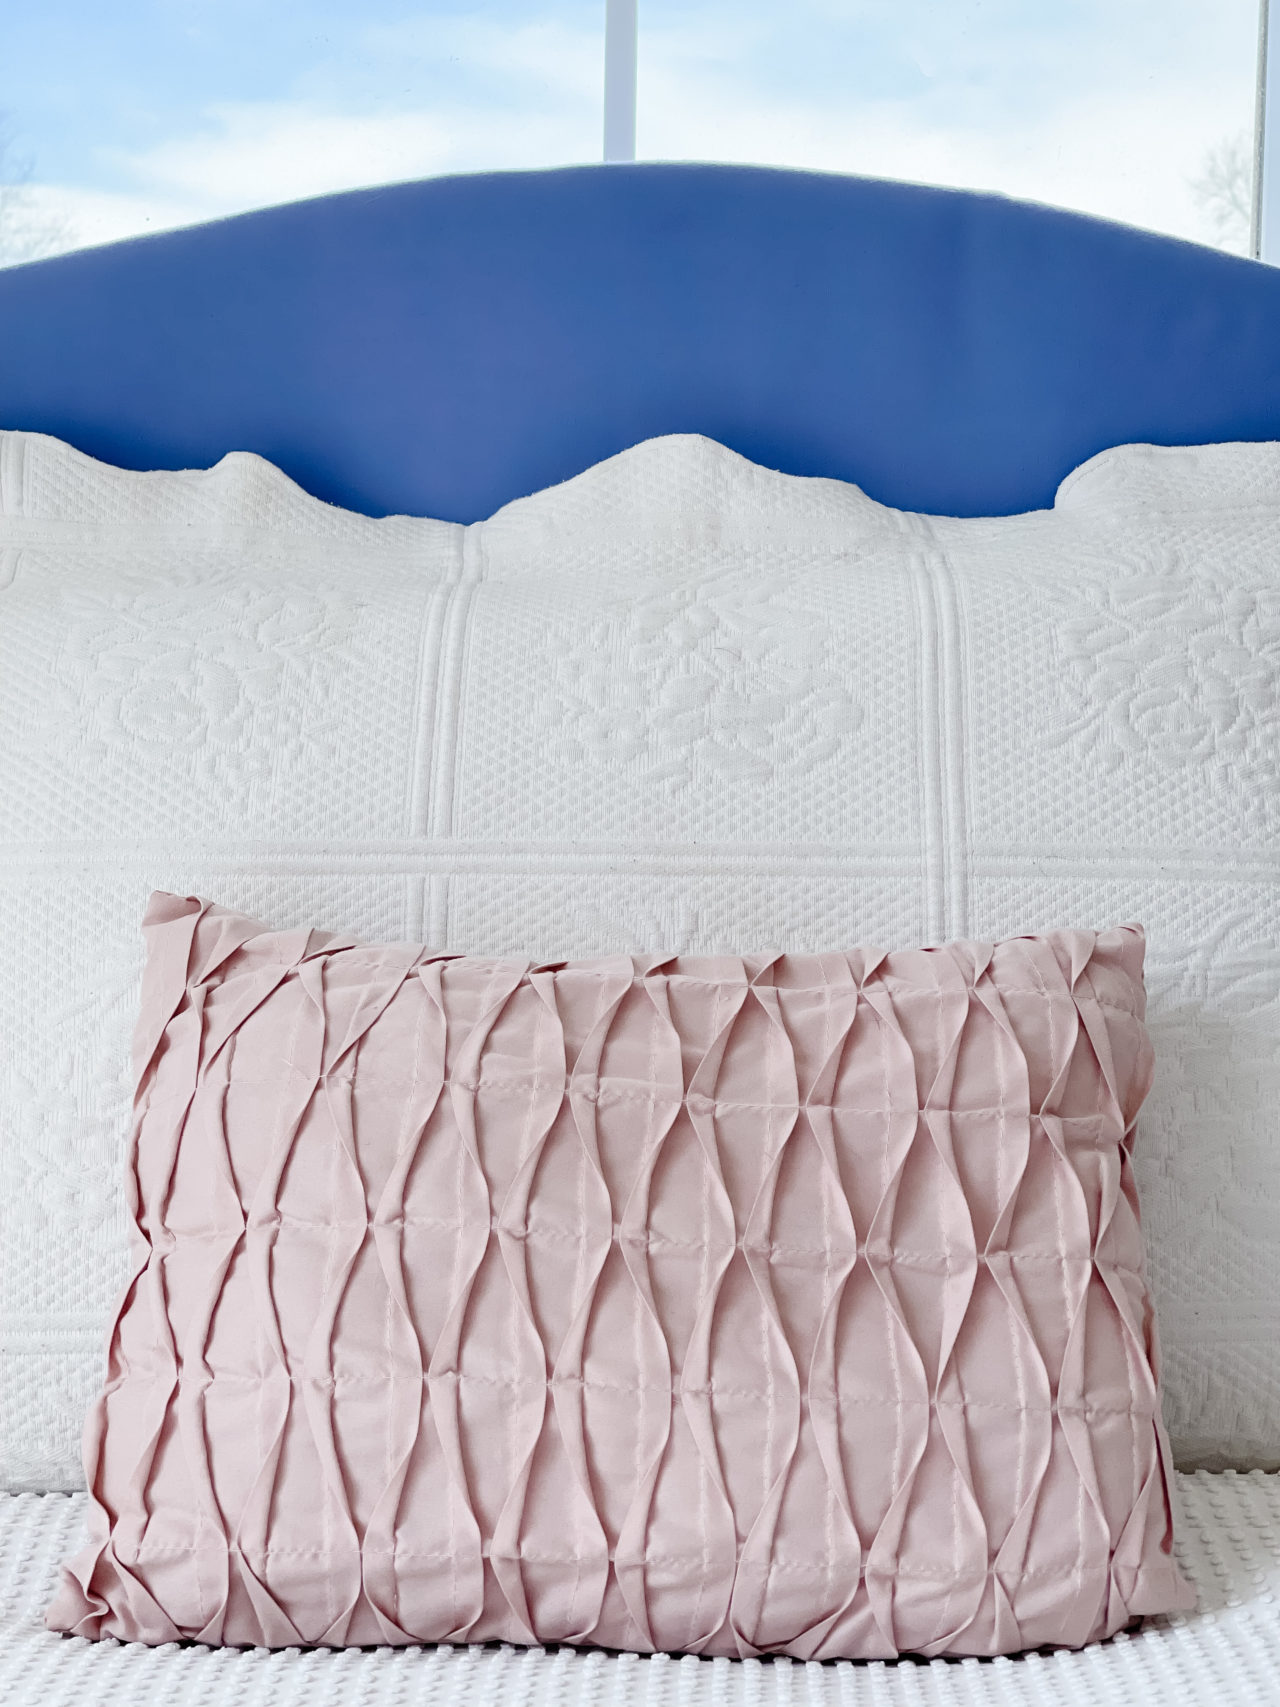 Tween Bedroom Ideas - Elsa's Bedroom Makeover - Pure Happy Home